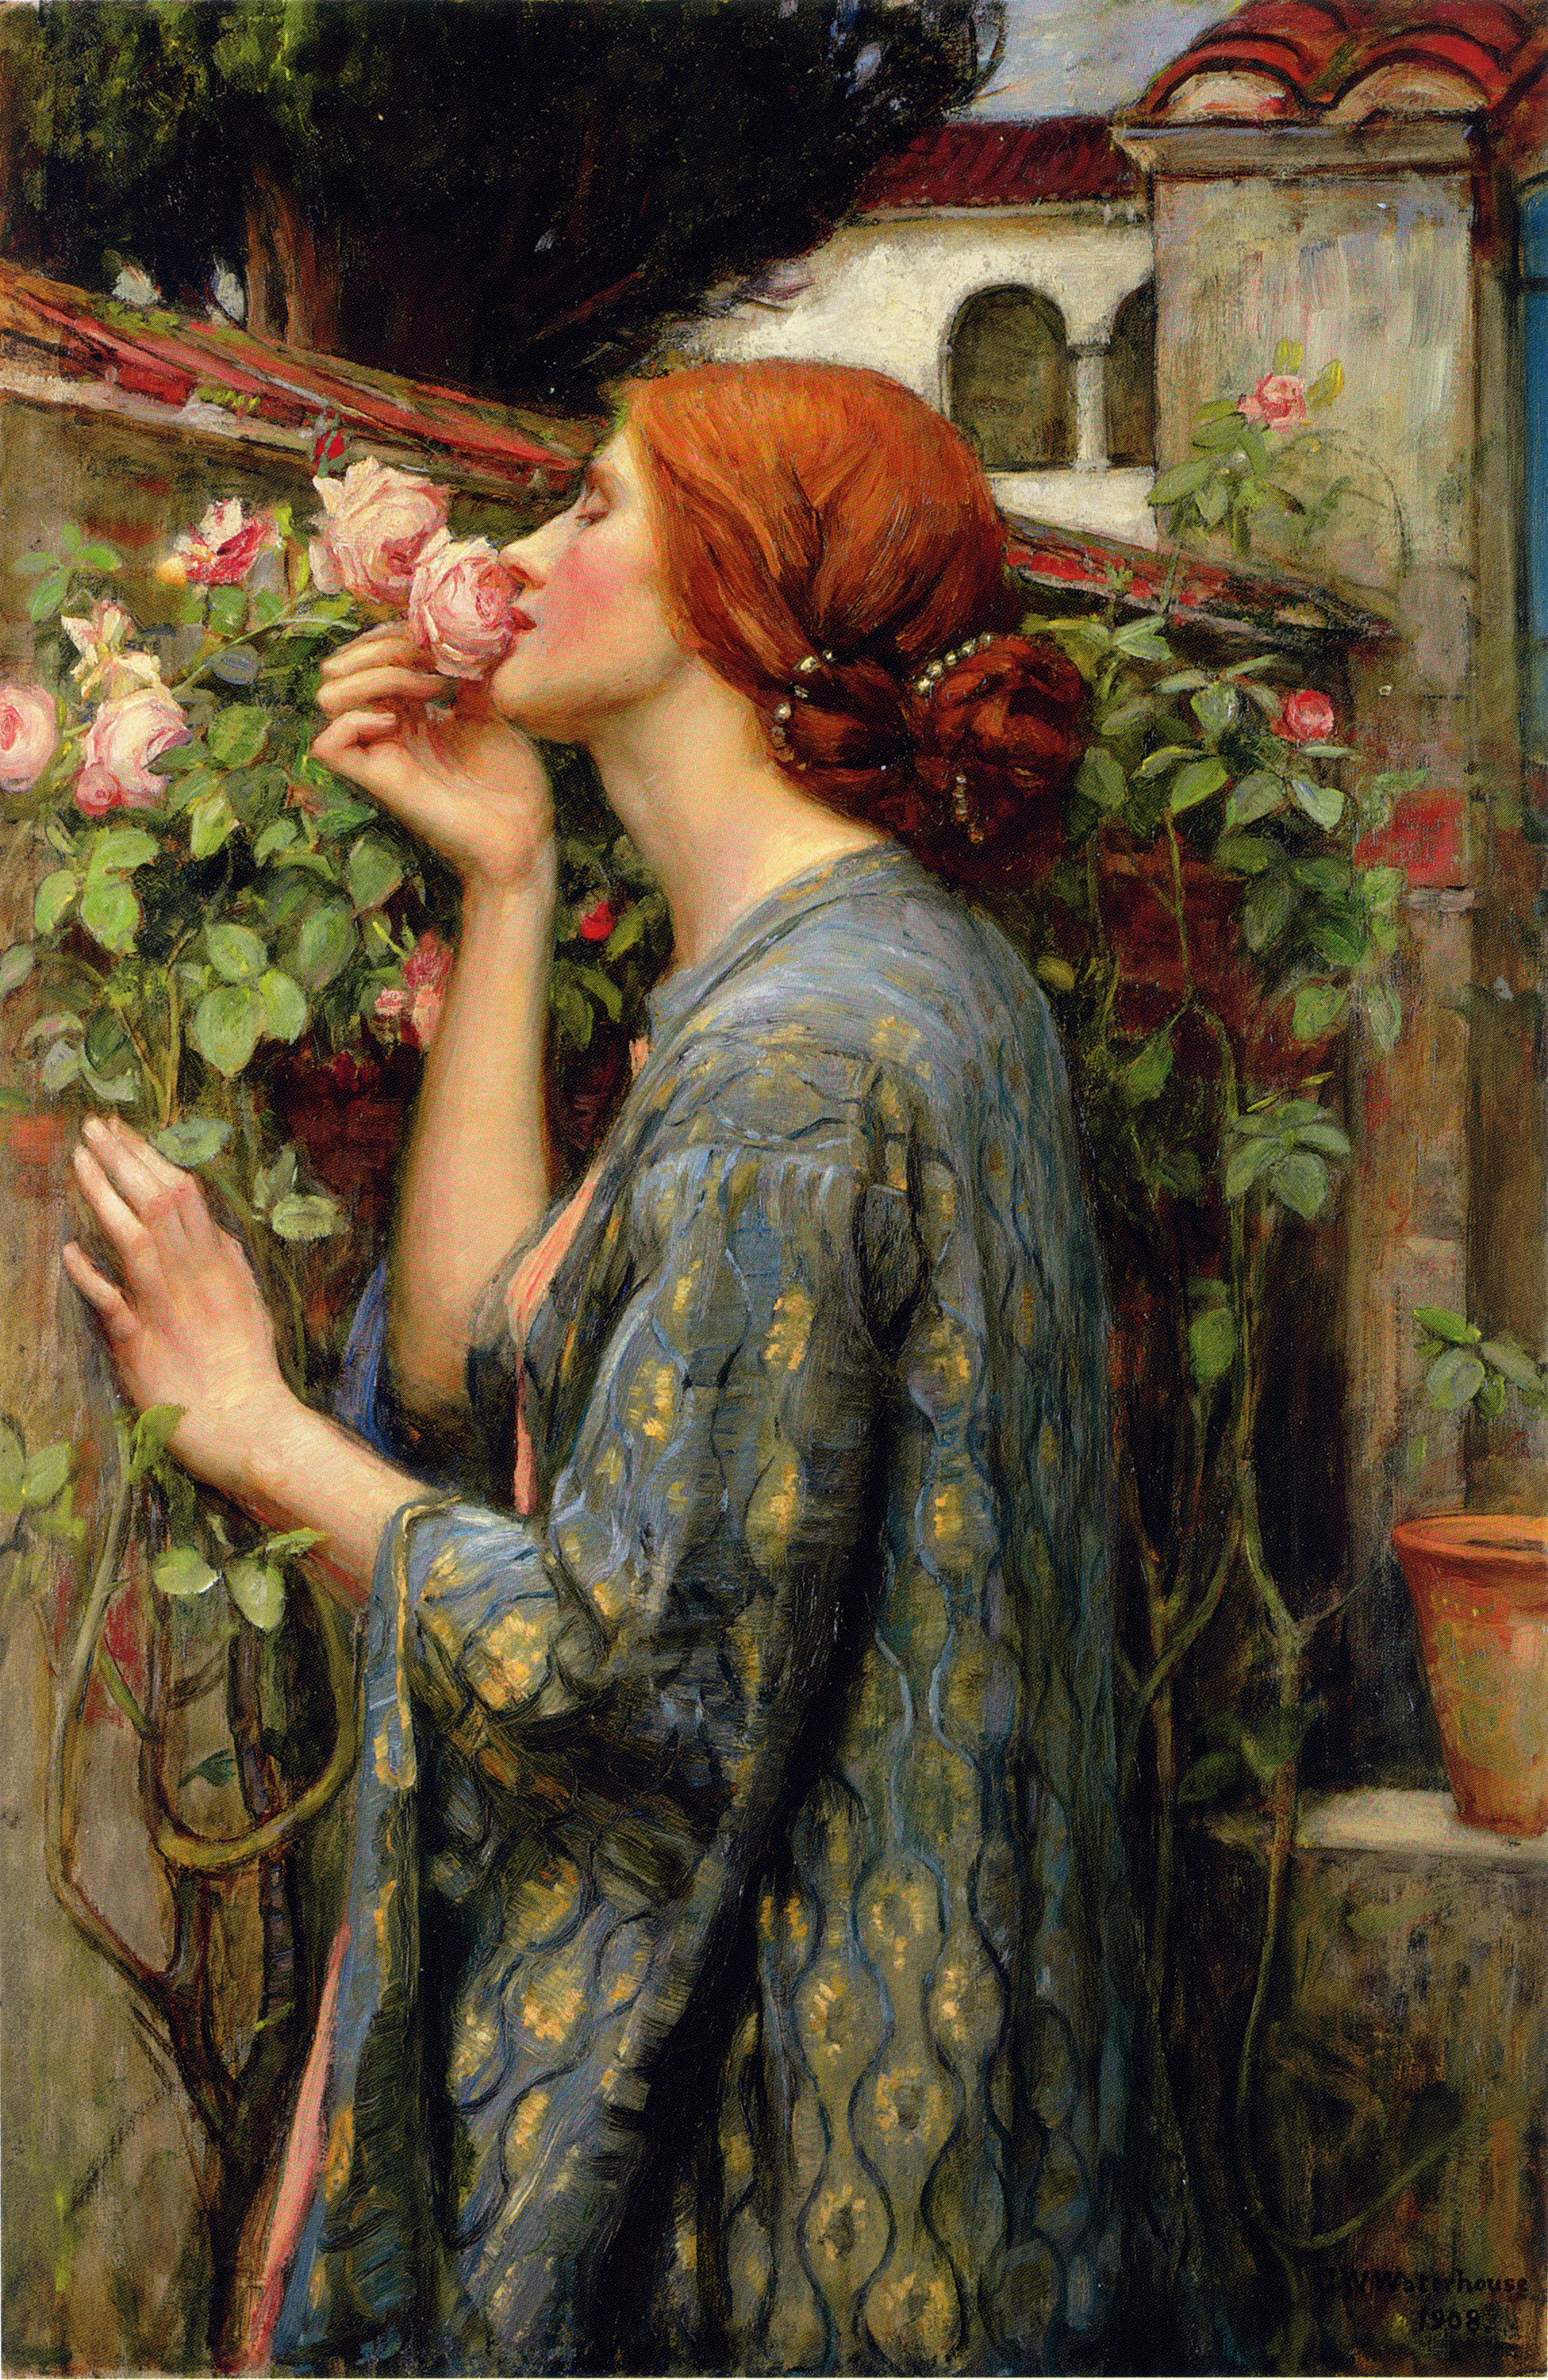 L’anima della rosa by John William Waterhouse - 1903 - 88.3 x 59.1 cm collezione privata